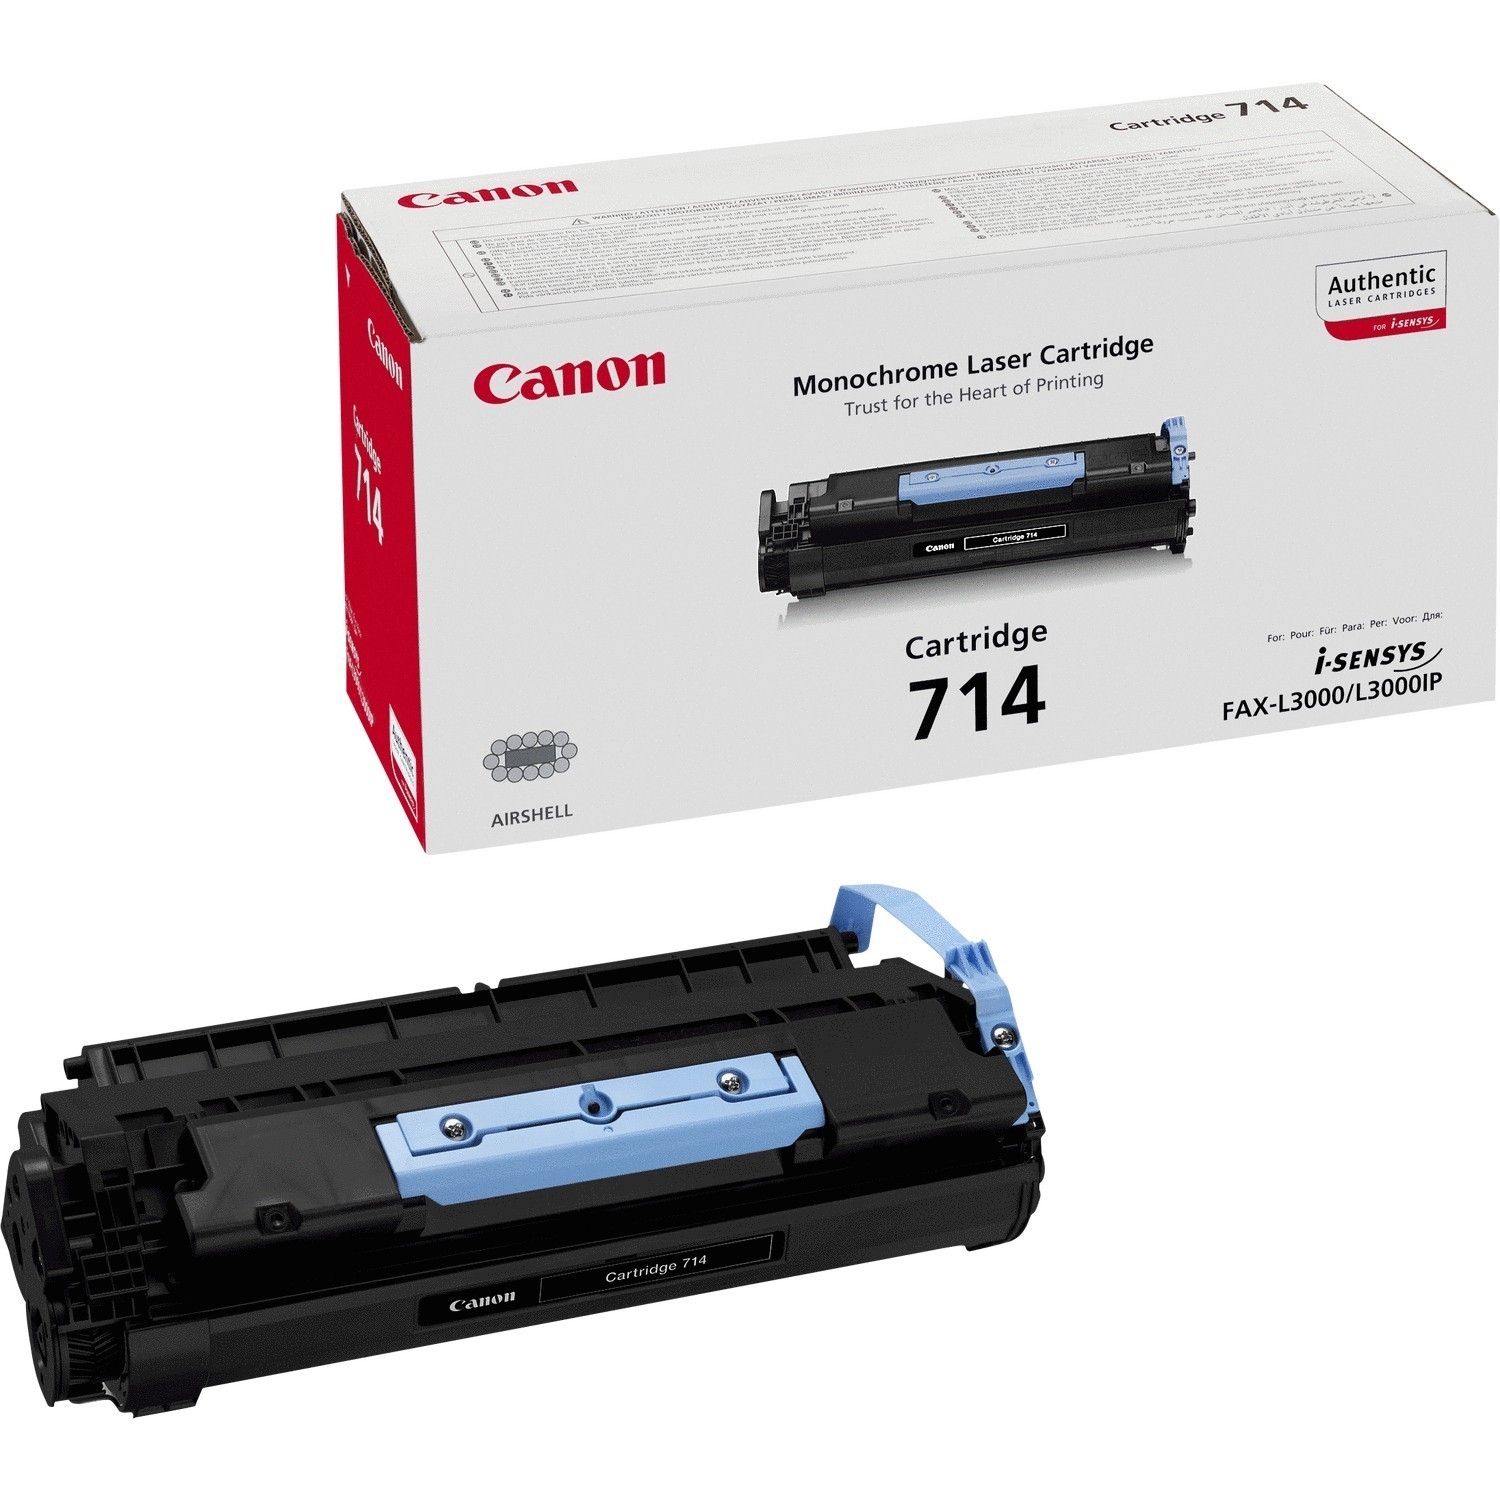 Original Toner Canon i-SENSYS Fax L 3000 IP (1153B002 / 714) Schwarz